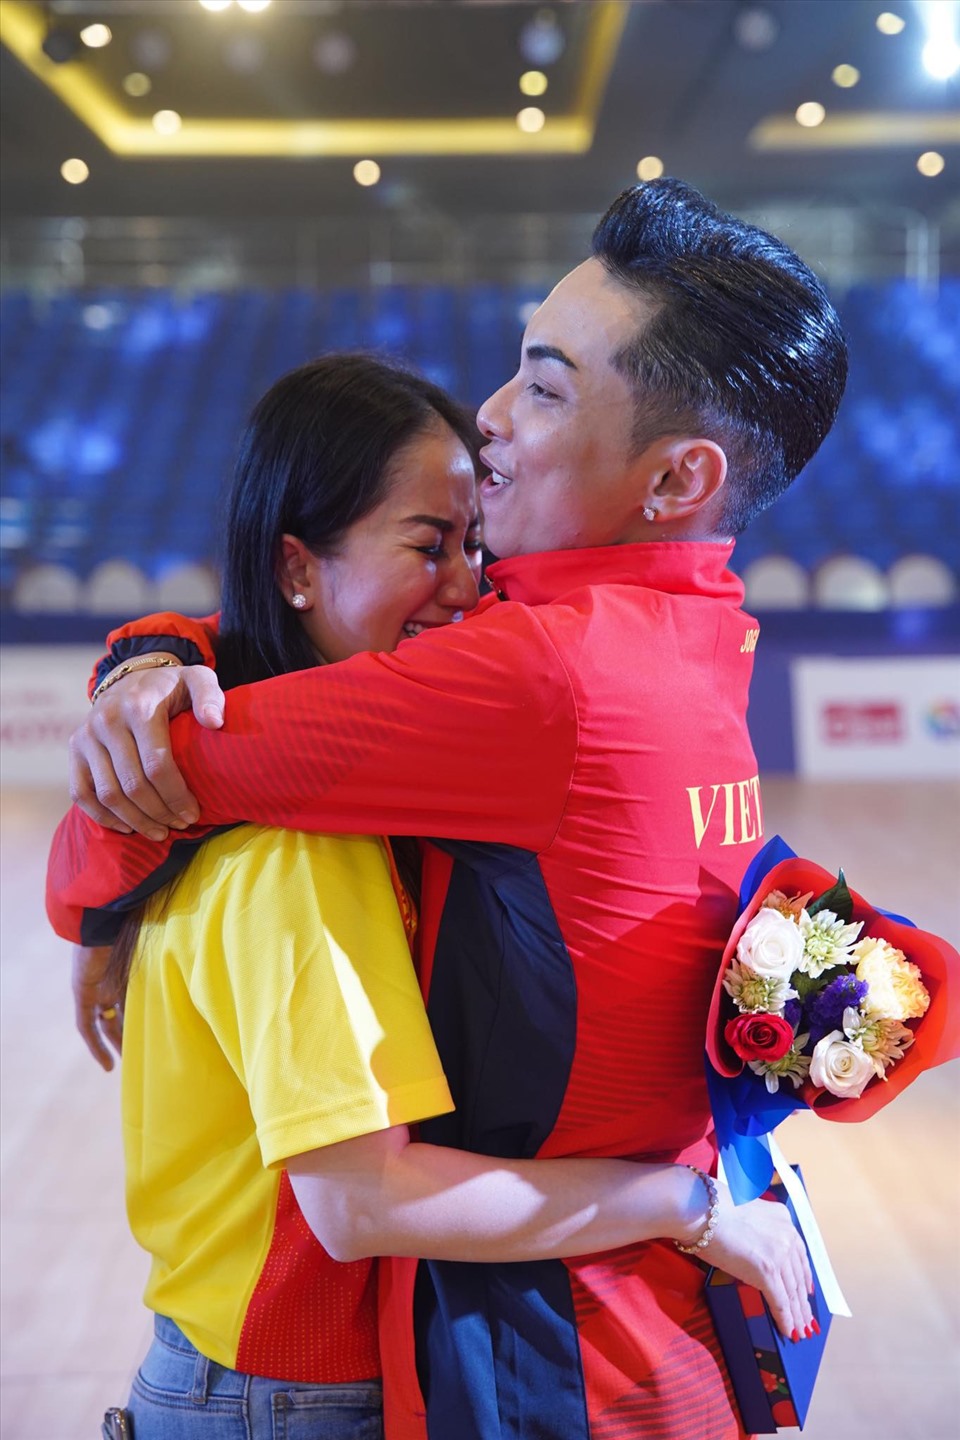 Sau 14 năm không góp mặt trong các kỳ SEA Games, dancesport Việt Nam đã có được những tấm huy chương quý giá. Là HLV đồng hành cùng các VĐV, Khánh Thi vỡ òa trong hạnh phúc khi chứng kiến Phan Hiển và bạn nhảy Nhã Uyên có được thành tích tốt tại SEA Games 30. Ảnh: FBNV.